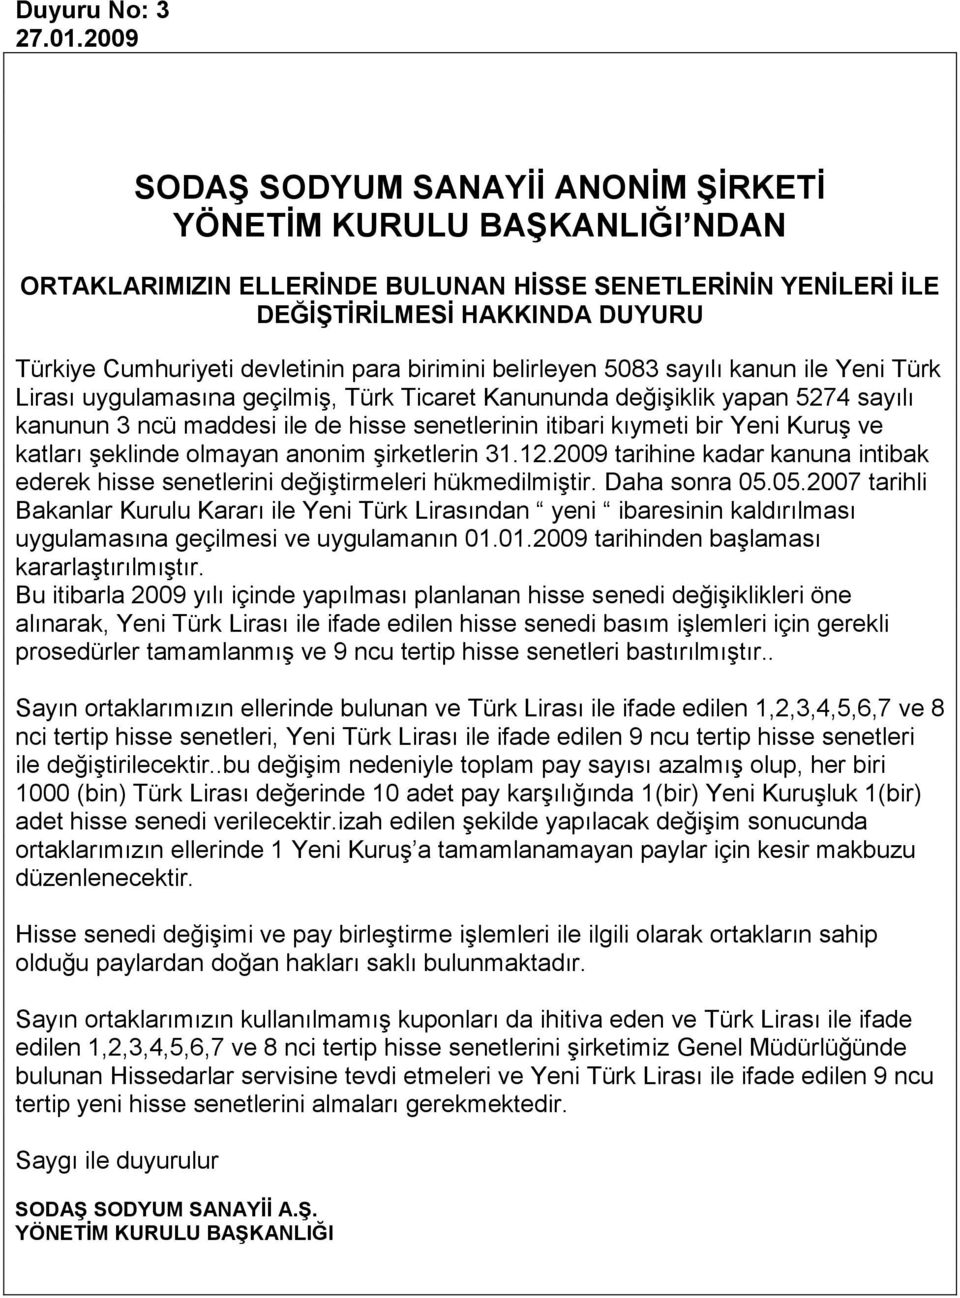 sayılı kanun ile Yeni Türk Lirası uygulamasına geçilmiş, Türk Ticaret Kanununda değişiklik yapan 5274 sayılı kanunun 3 ncü maddesi ile de hisse senetlerinin itibari kıymeti bir Yeni Kuruş ve katları